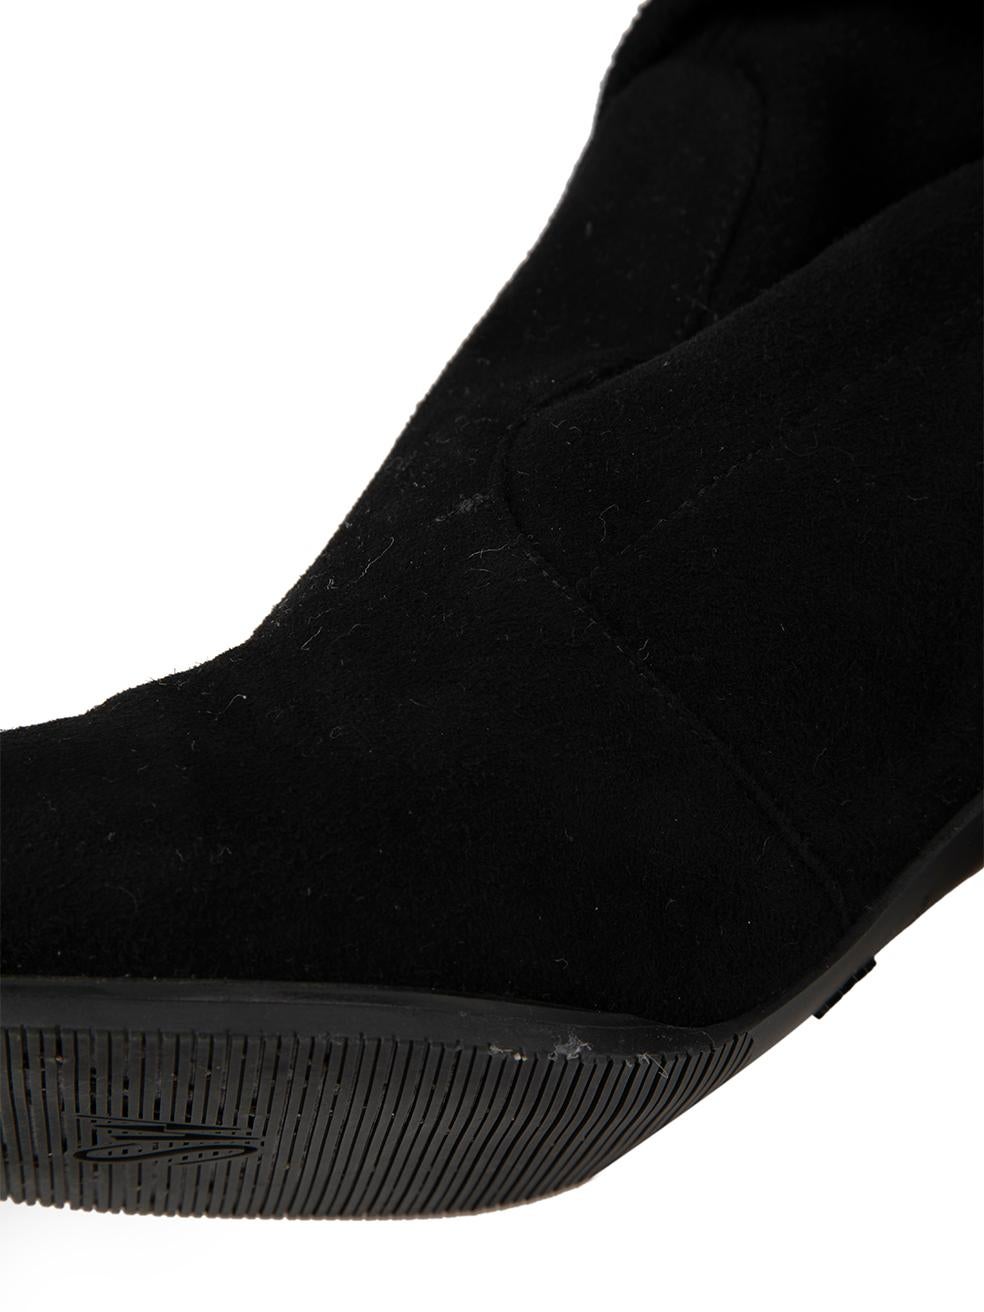 Stuart Weitzman Women's Black Suede Tieland Over The Knee Boots 2